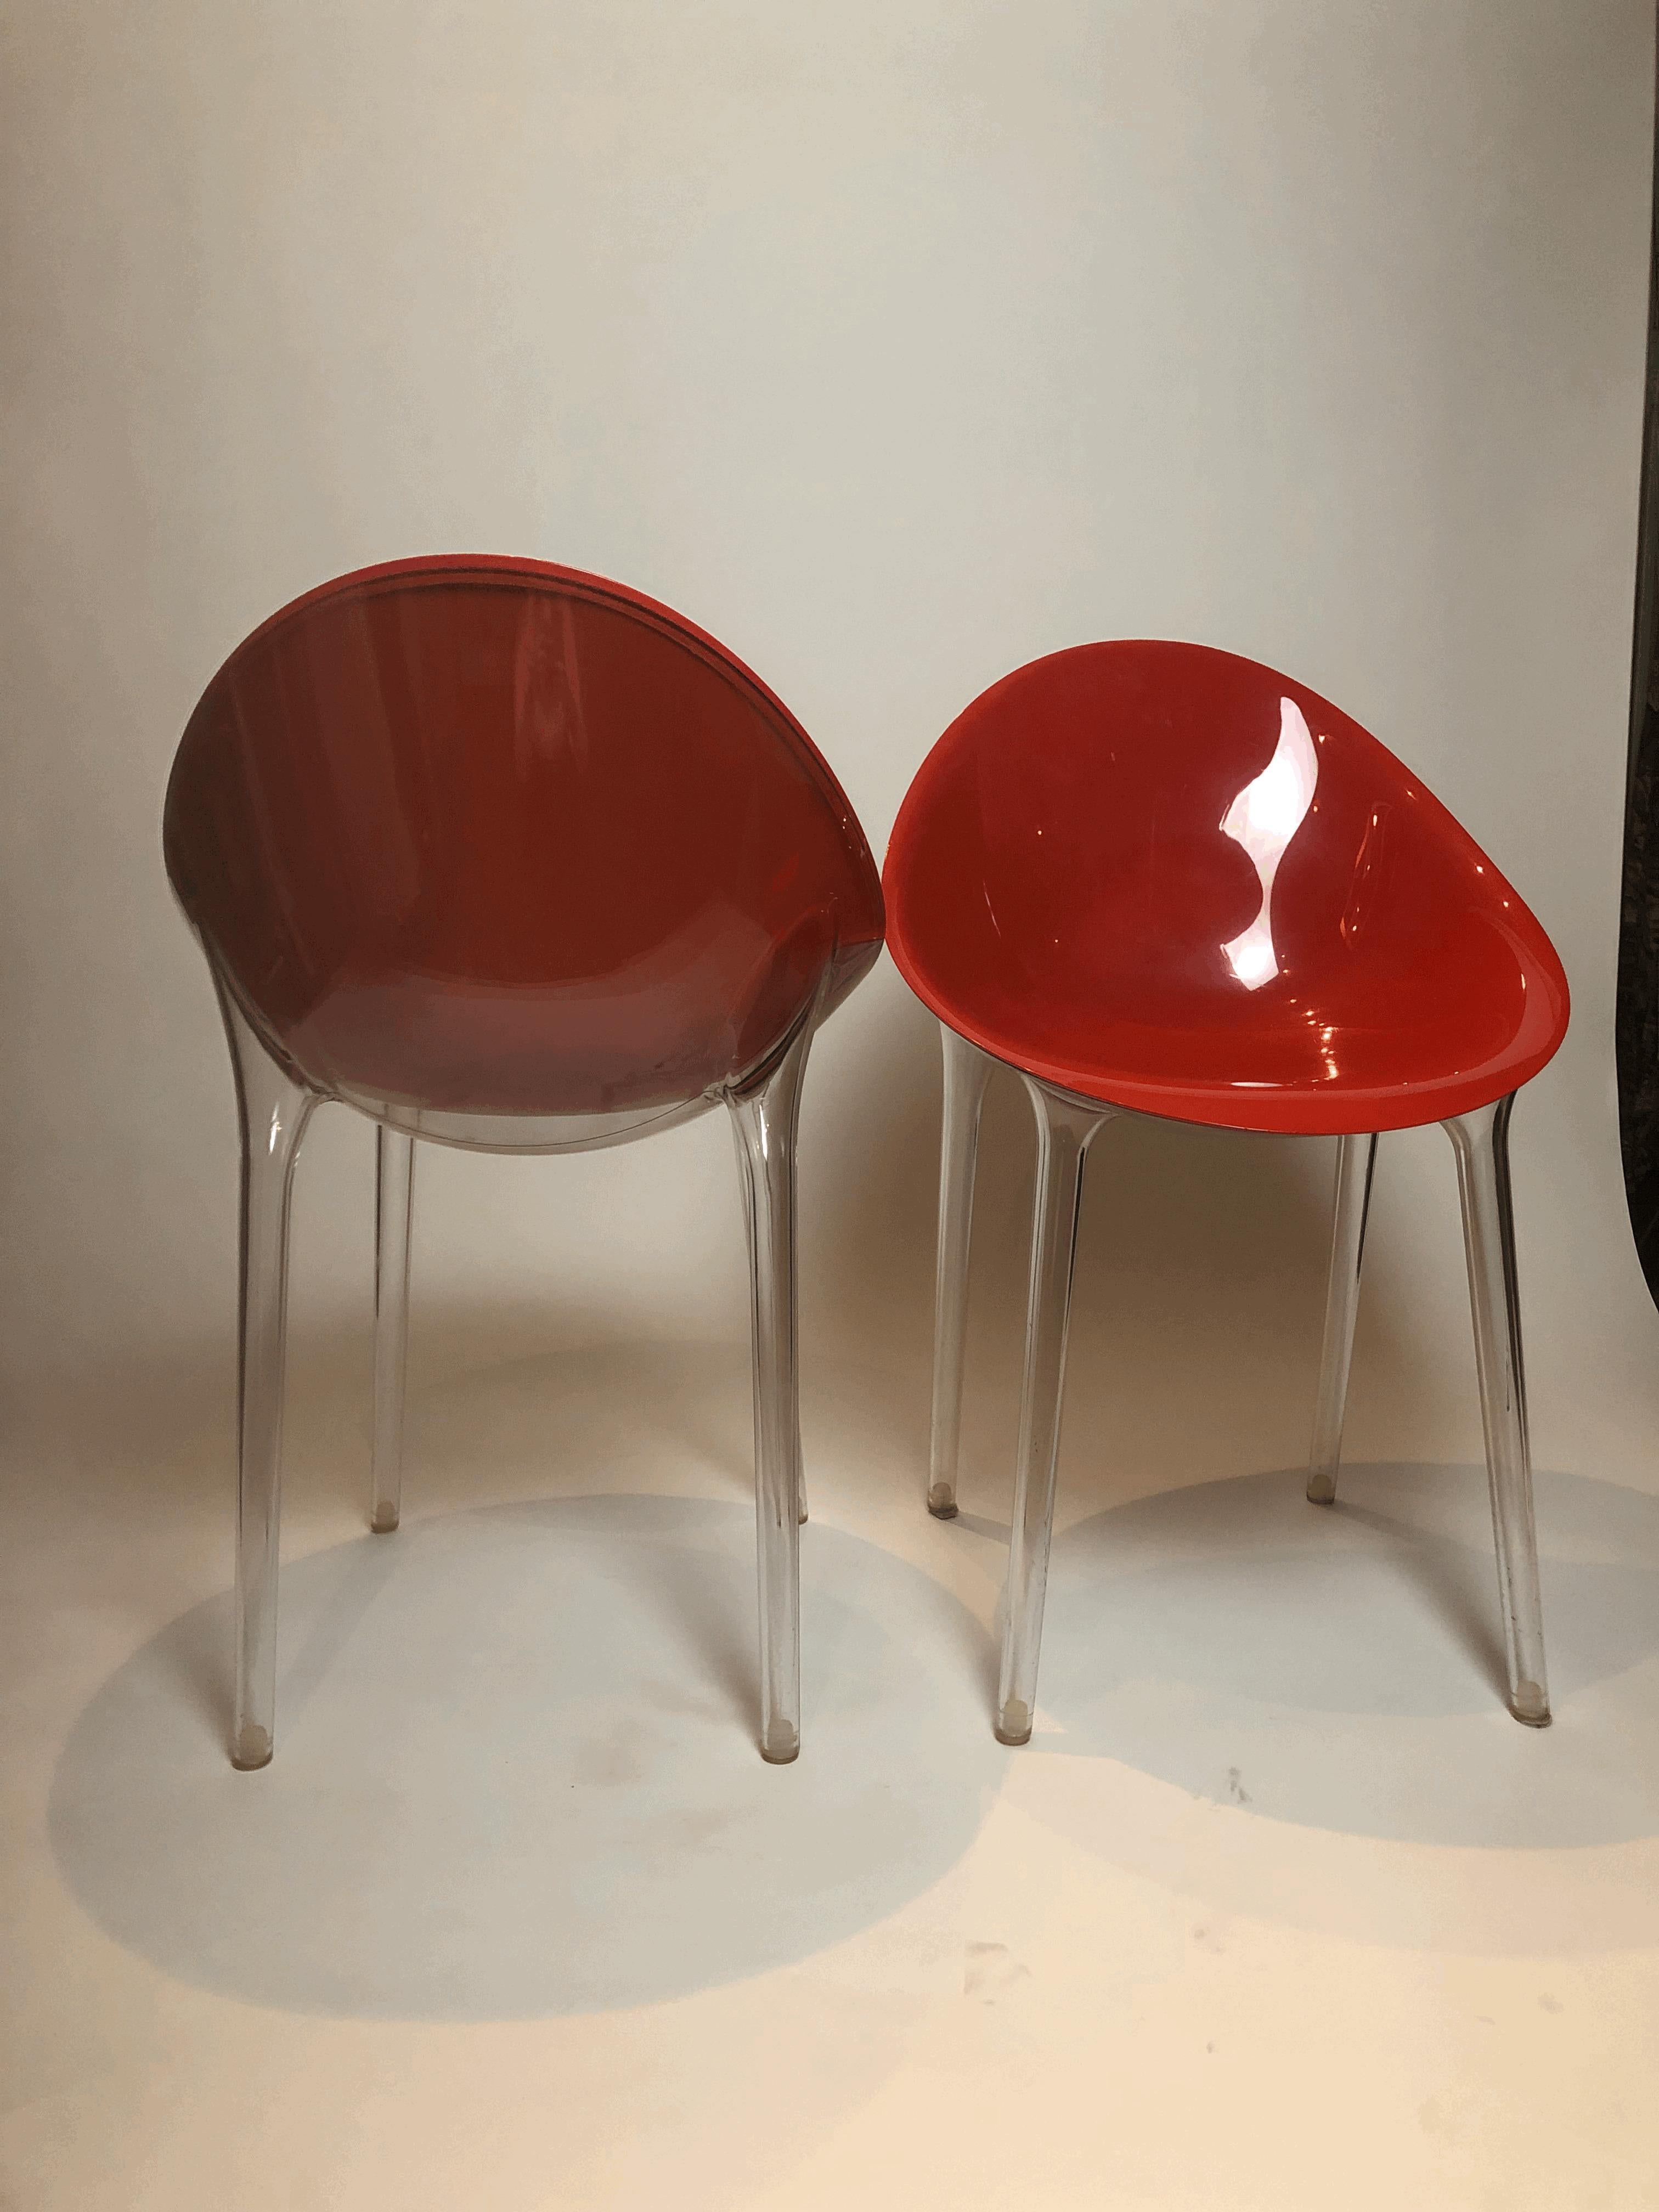 La collaboration entre Philippe Starck et Kartell dans les années 1990 a donné naissance à une série de chaises révolutionnaires, notamment celles en polycarbonate rouge et transparent. Ces chaises ont rapidement conquis le marché mondial, avec plus